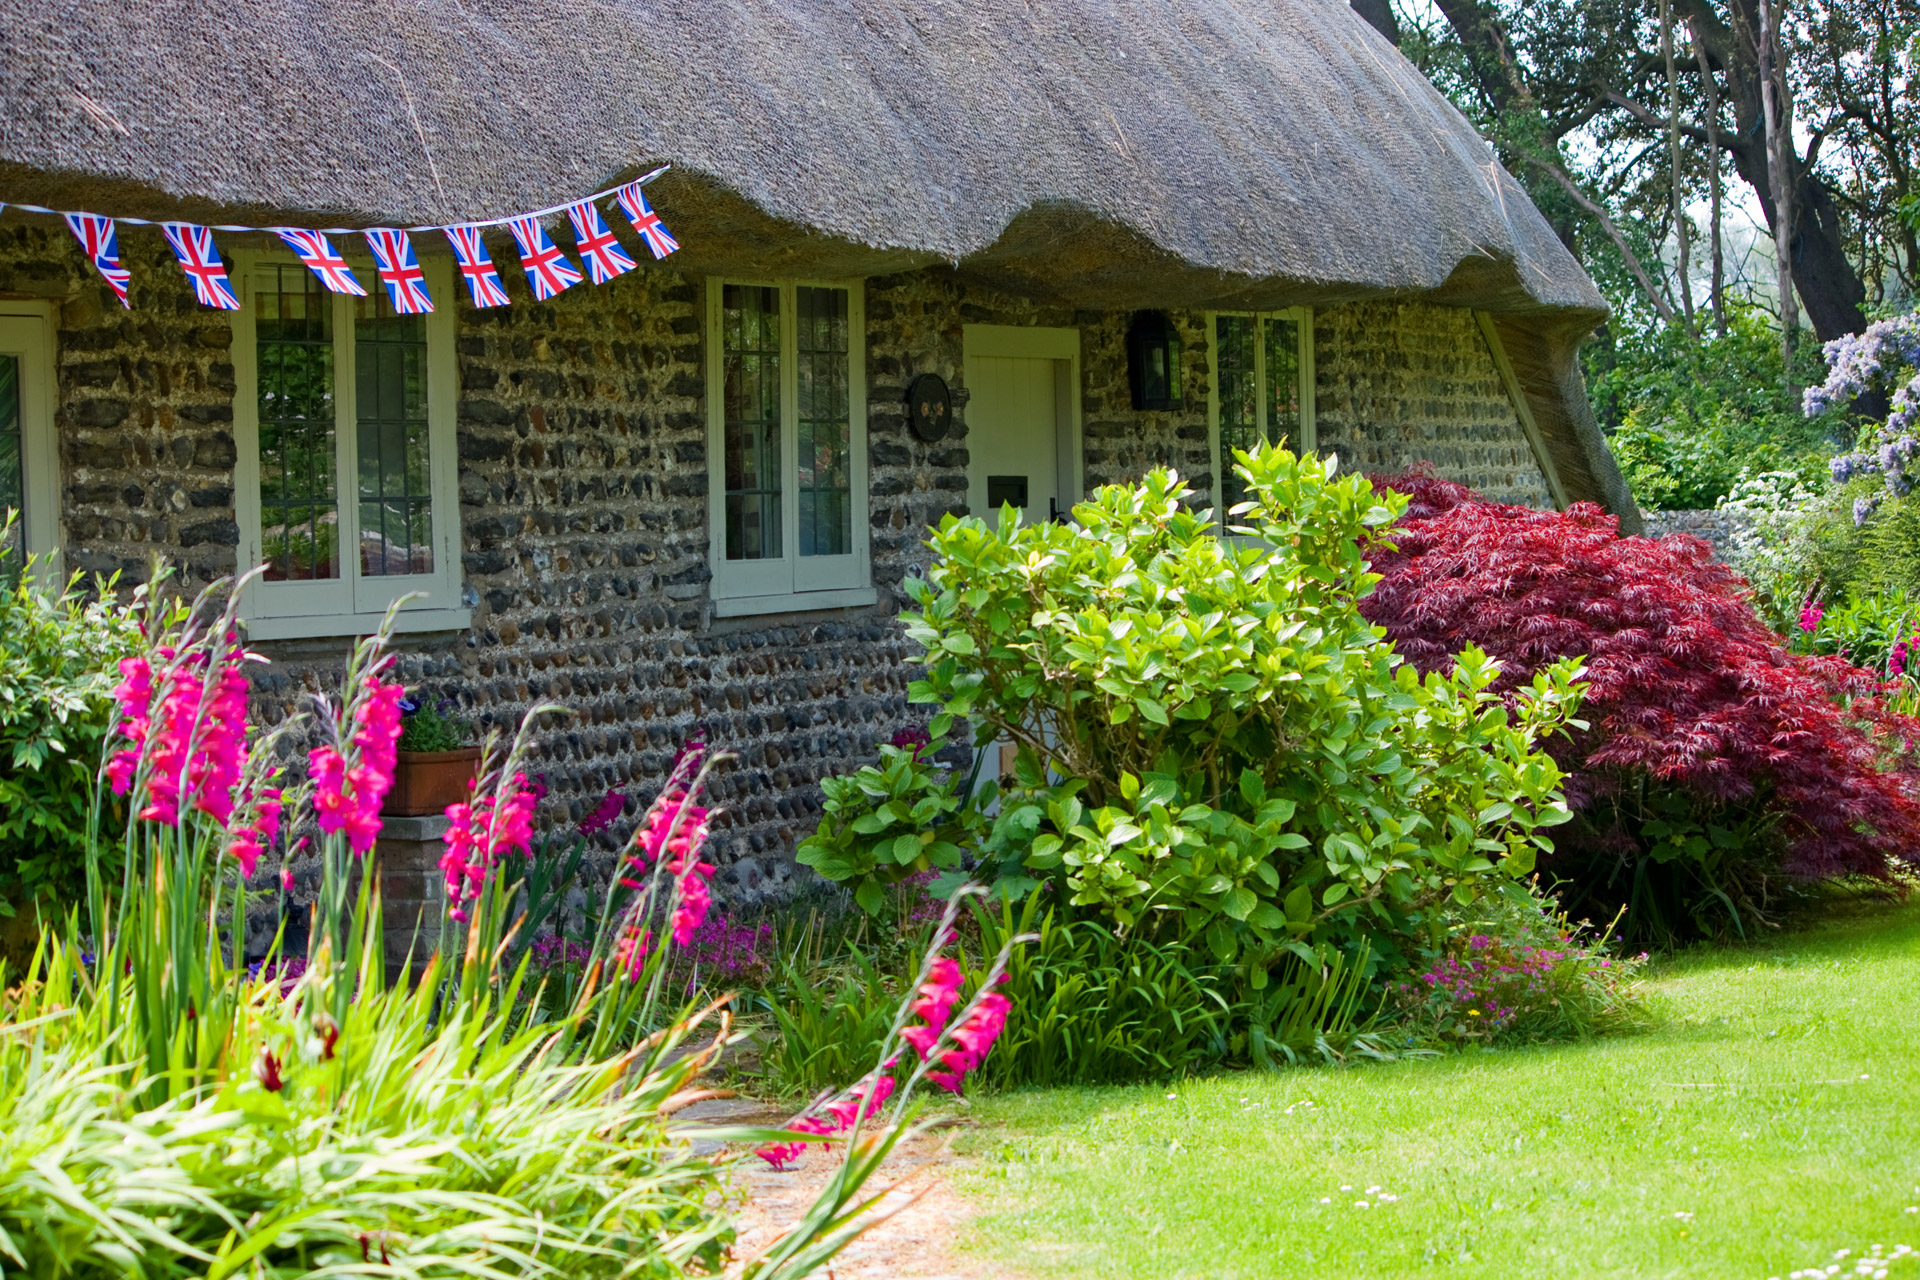 Thatched Cottage & Garden